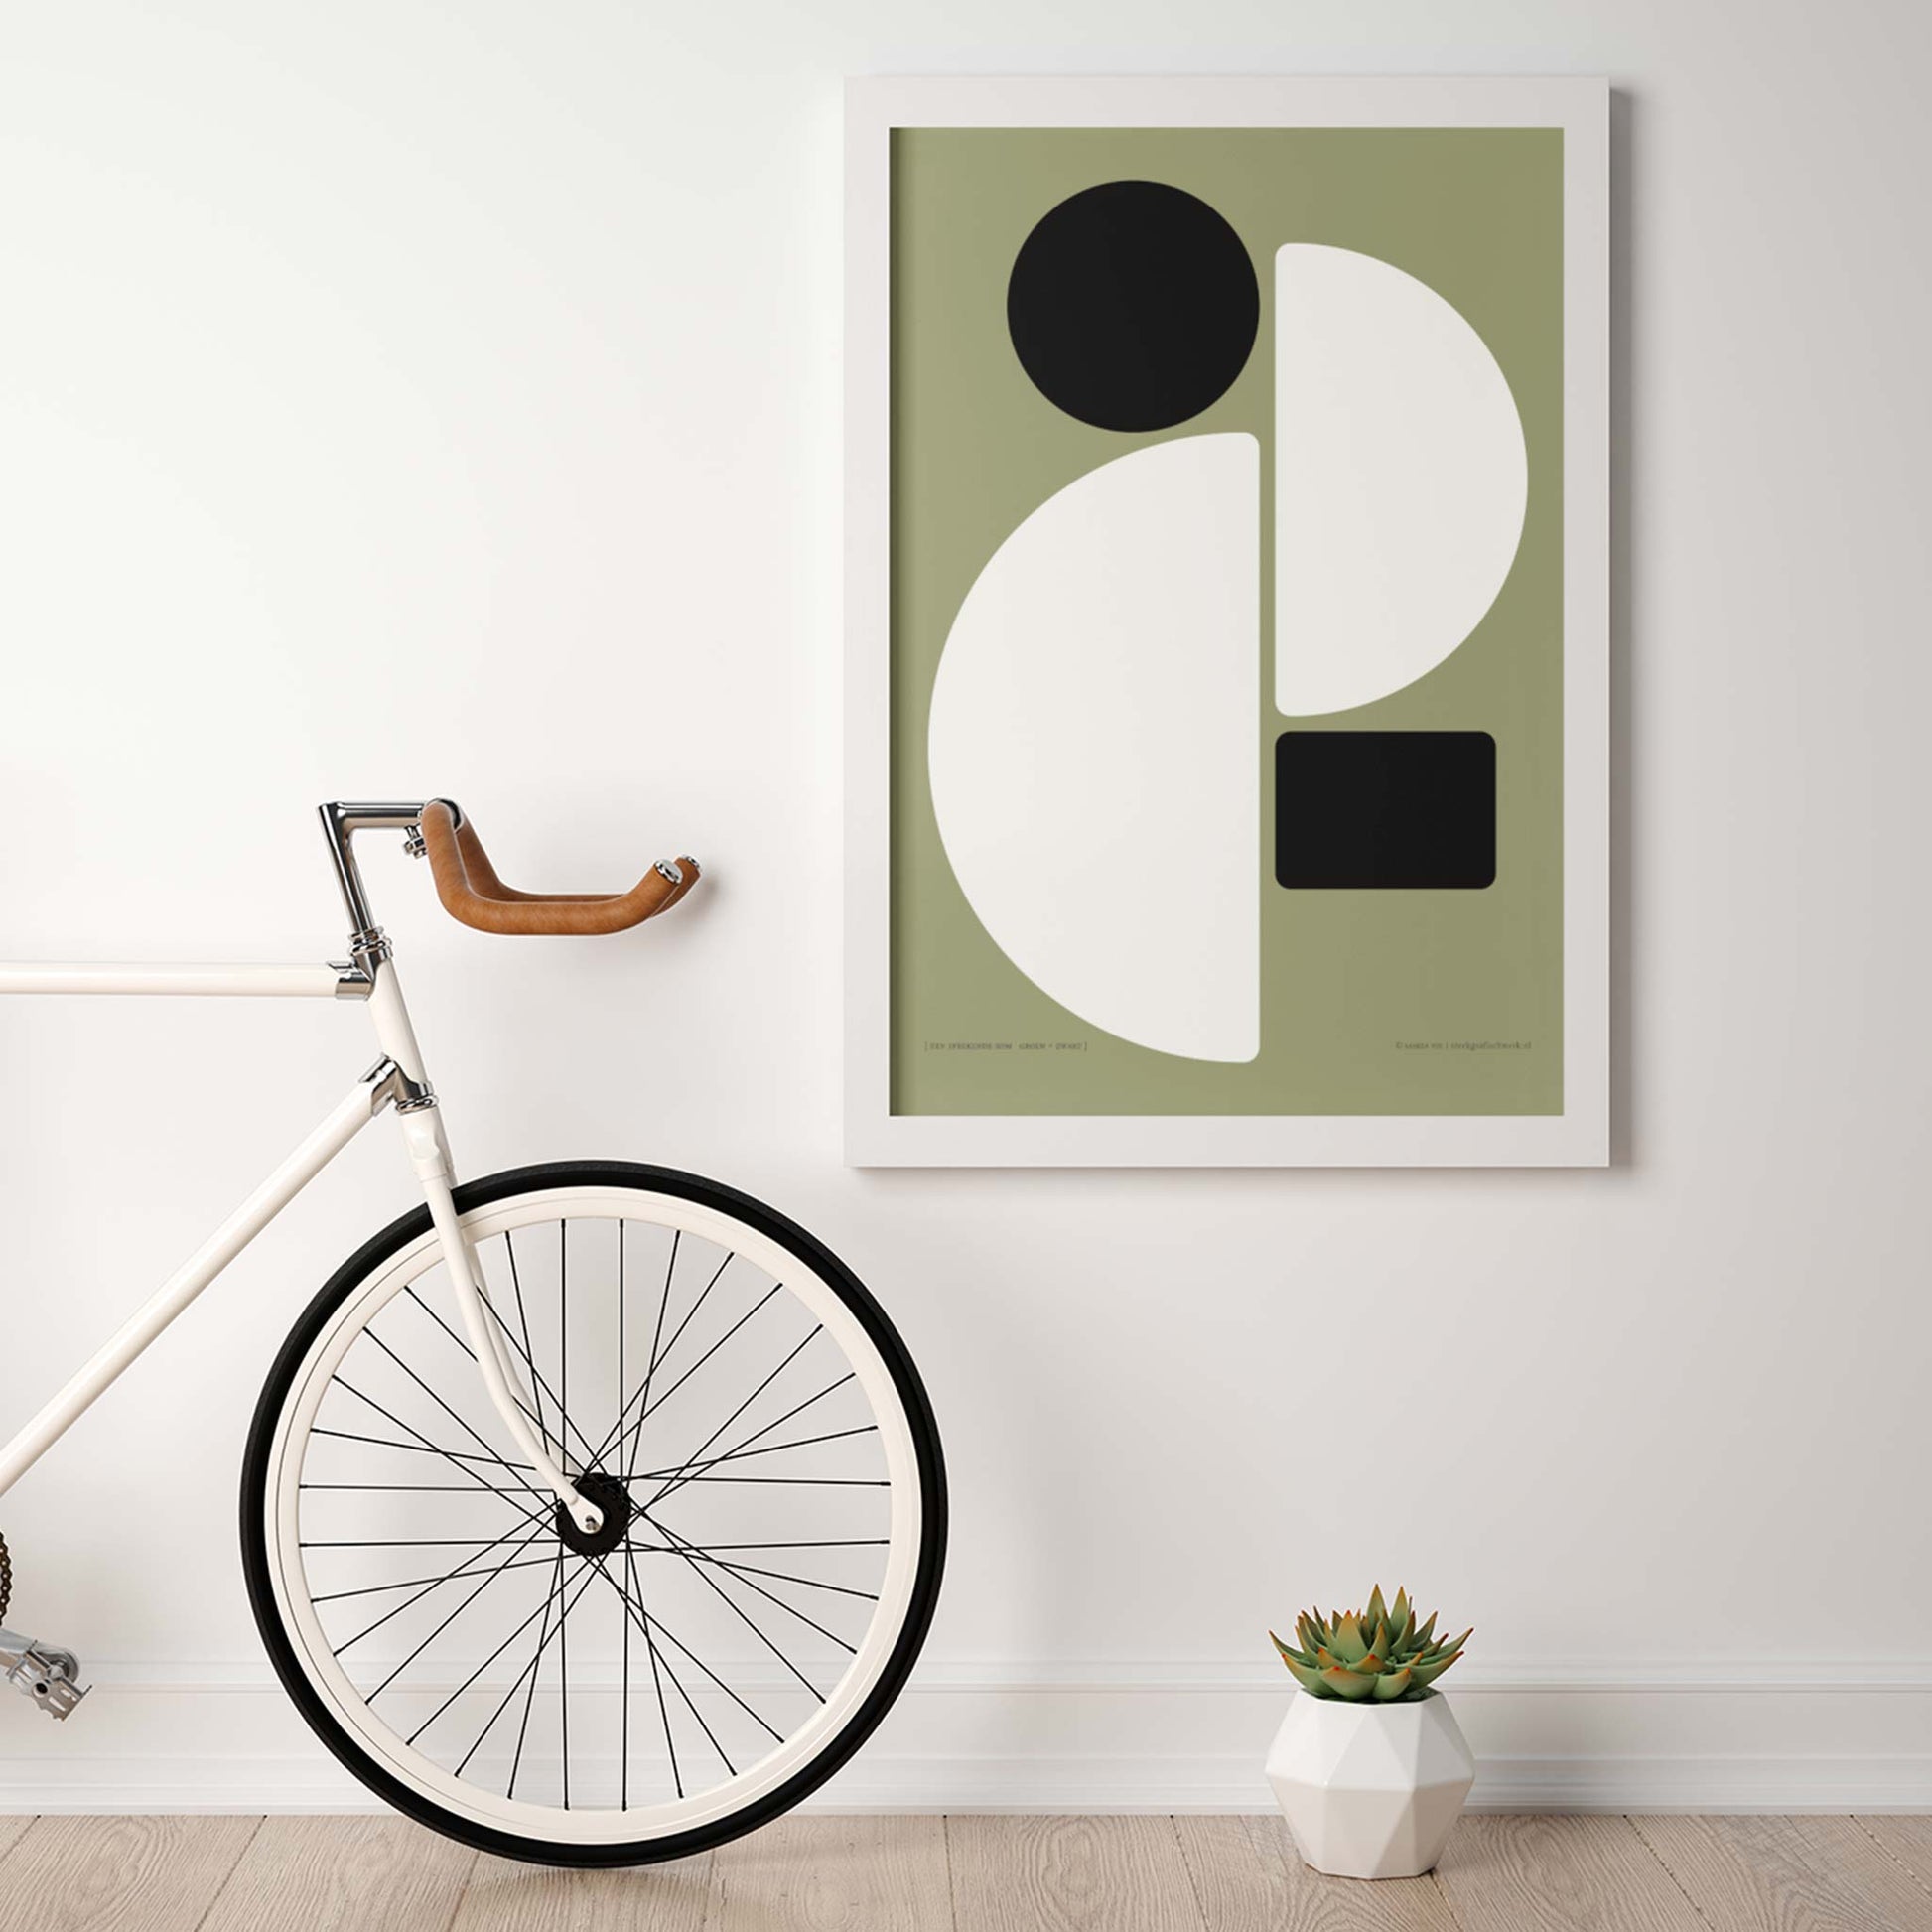 Productafbeelding, poster "een sprekende som groen+zwart", foto impressie 2, hangend aan een wand, in een moderne inrichting